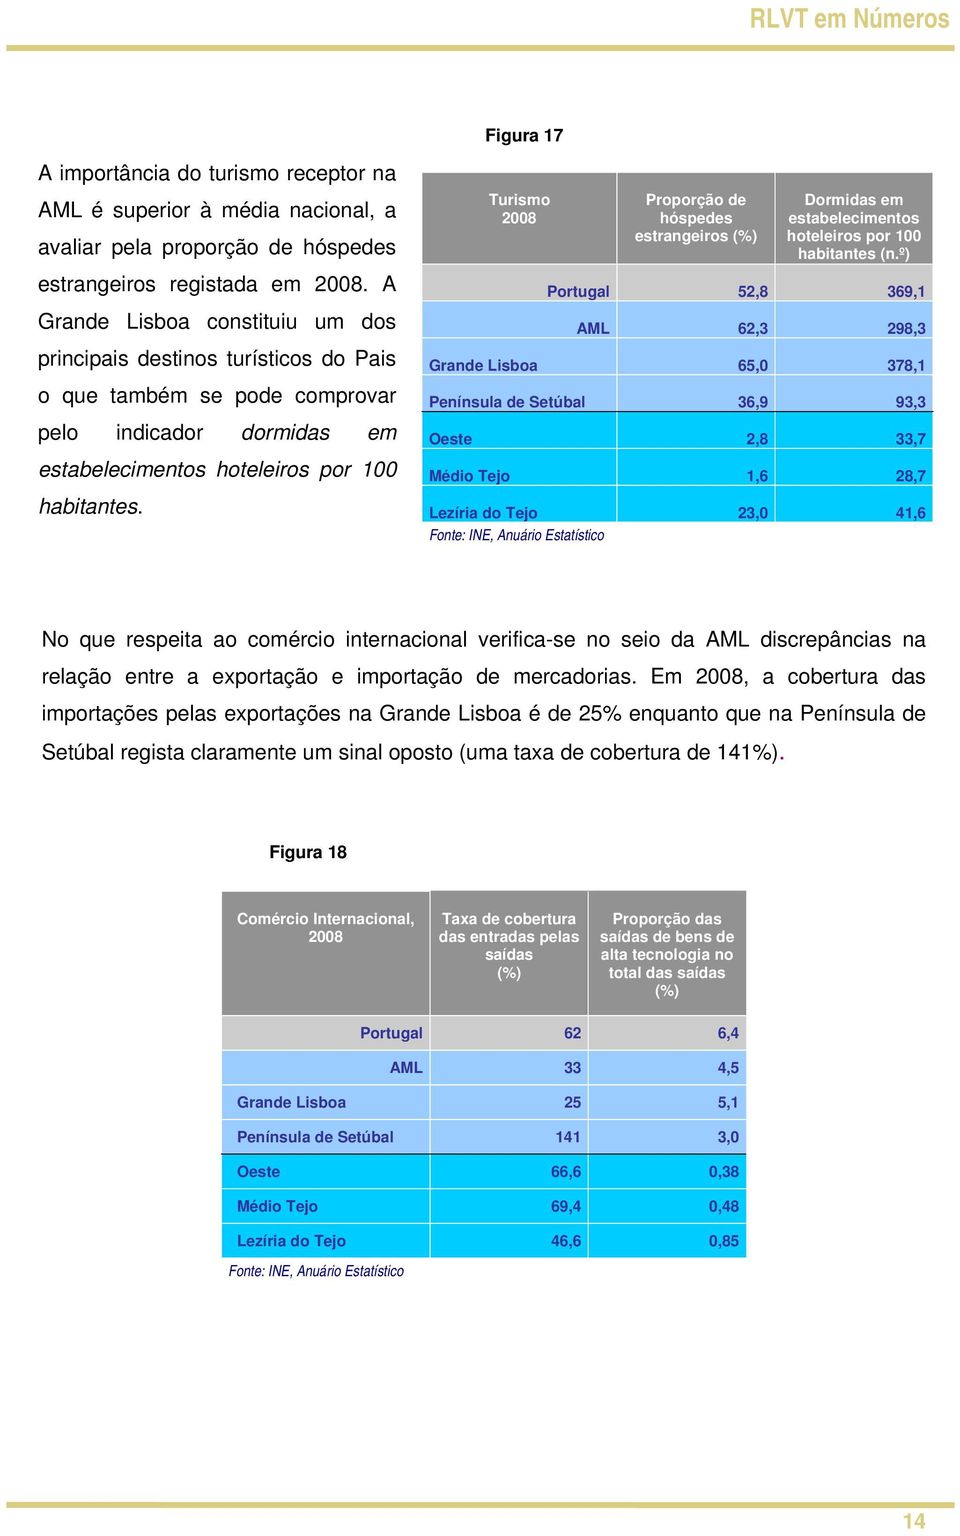 Turismo 2008 Proporção de hóspedes estrangeiros (%) Dormidas em estabelecimentos hoteleiros por 100 habitantes (n.